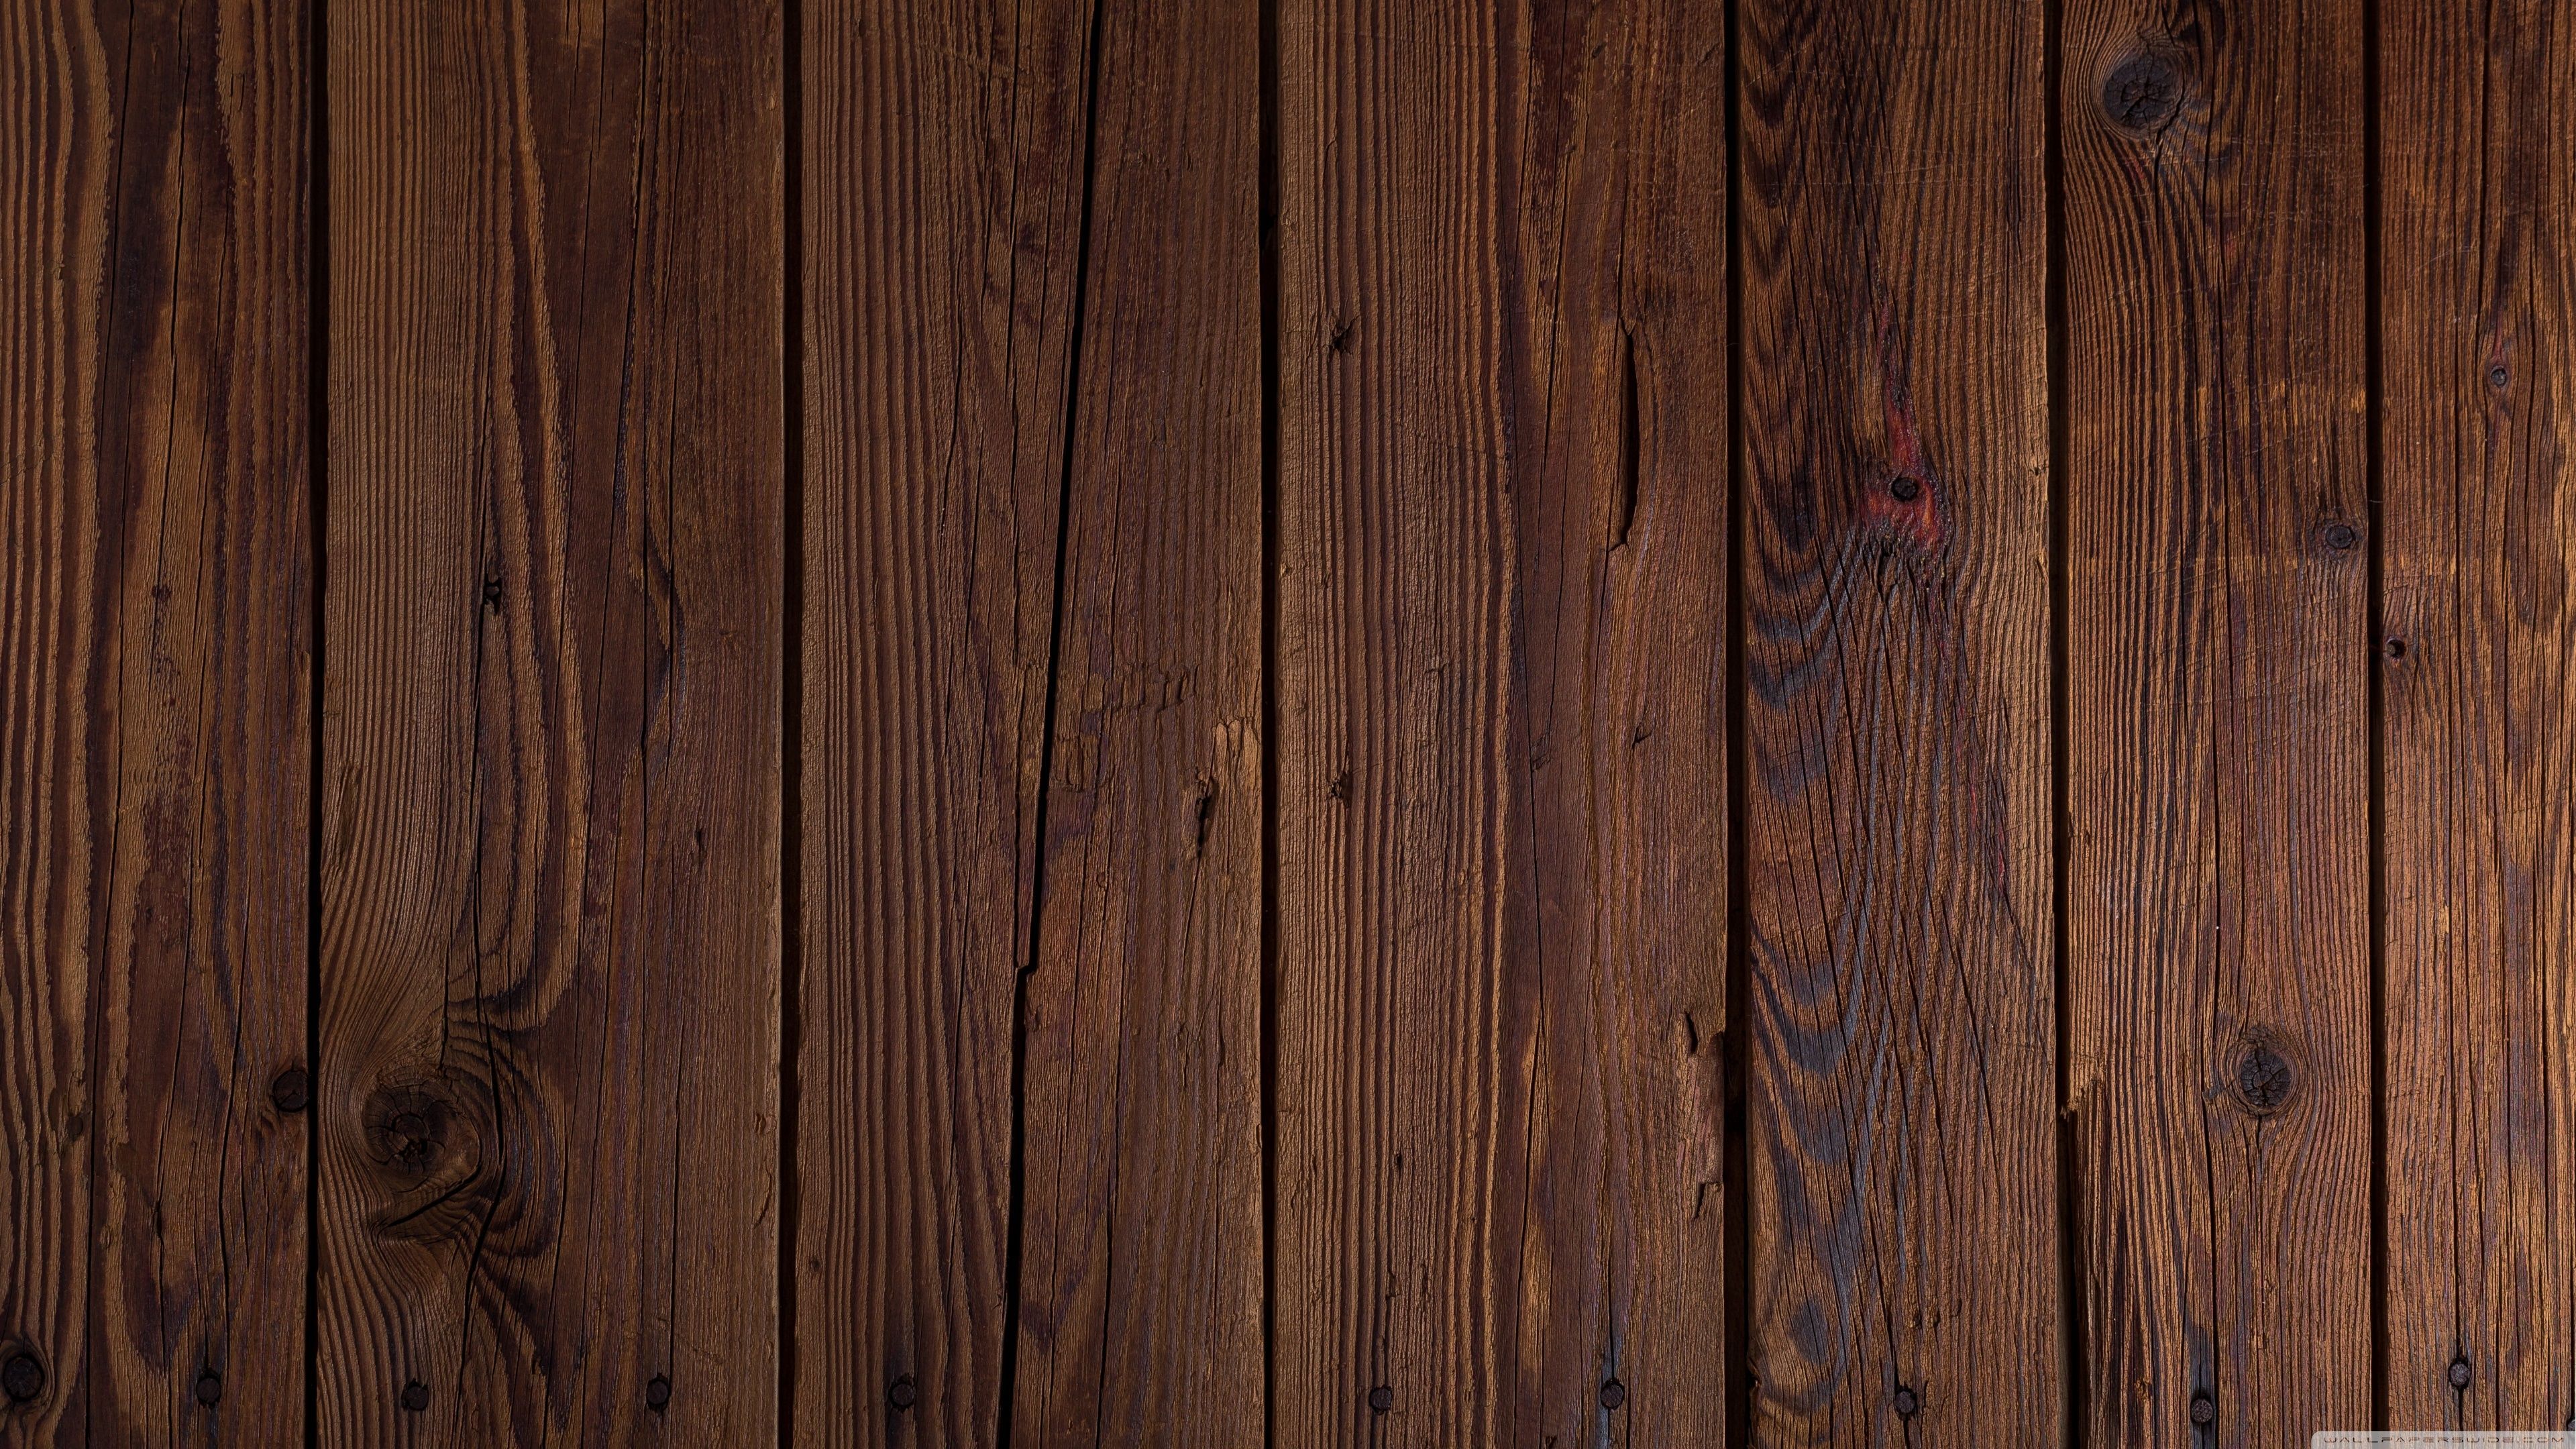 Khám phá những hình nền gỗ 4k độc đáo, đẹp mắt với những họa tiết bề mặt gỗ tuyệt đẹp. Hãy cập nhật hình nền mới cho thiết bị của bạn với những tấm hình đẹp, sắc nét, chân thực như thật.